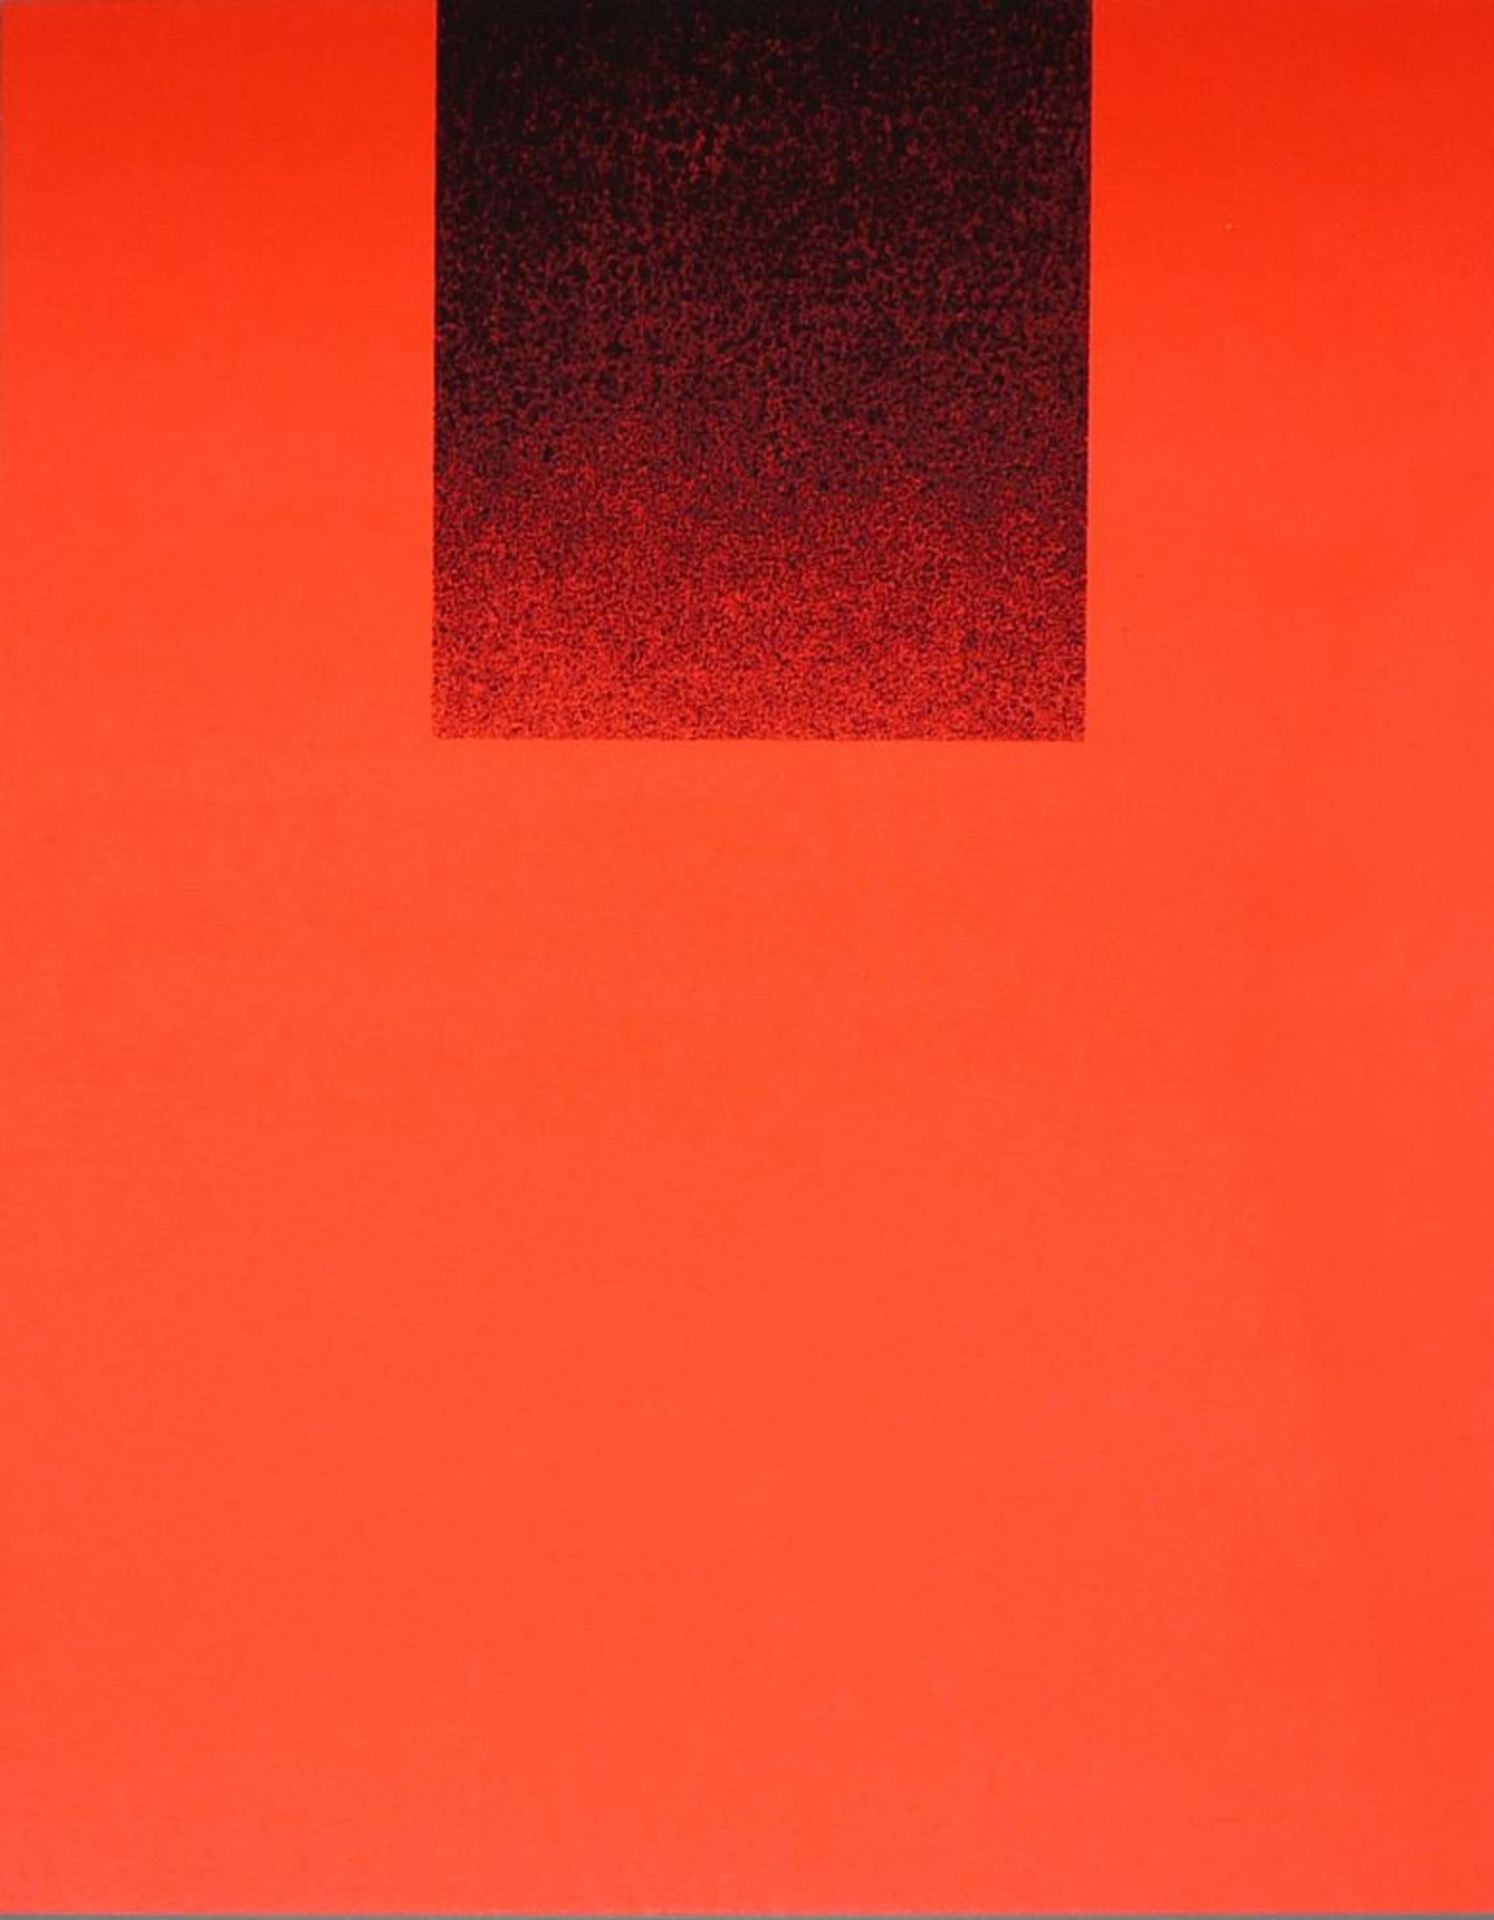 Rupprecht Geiger, Black on Red, silkscreen, signed